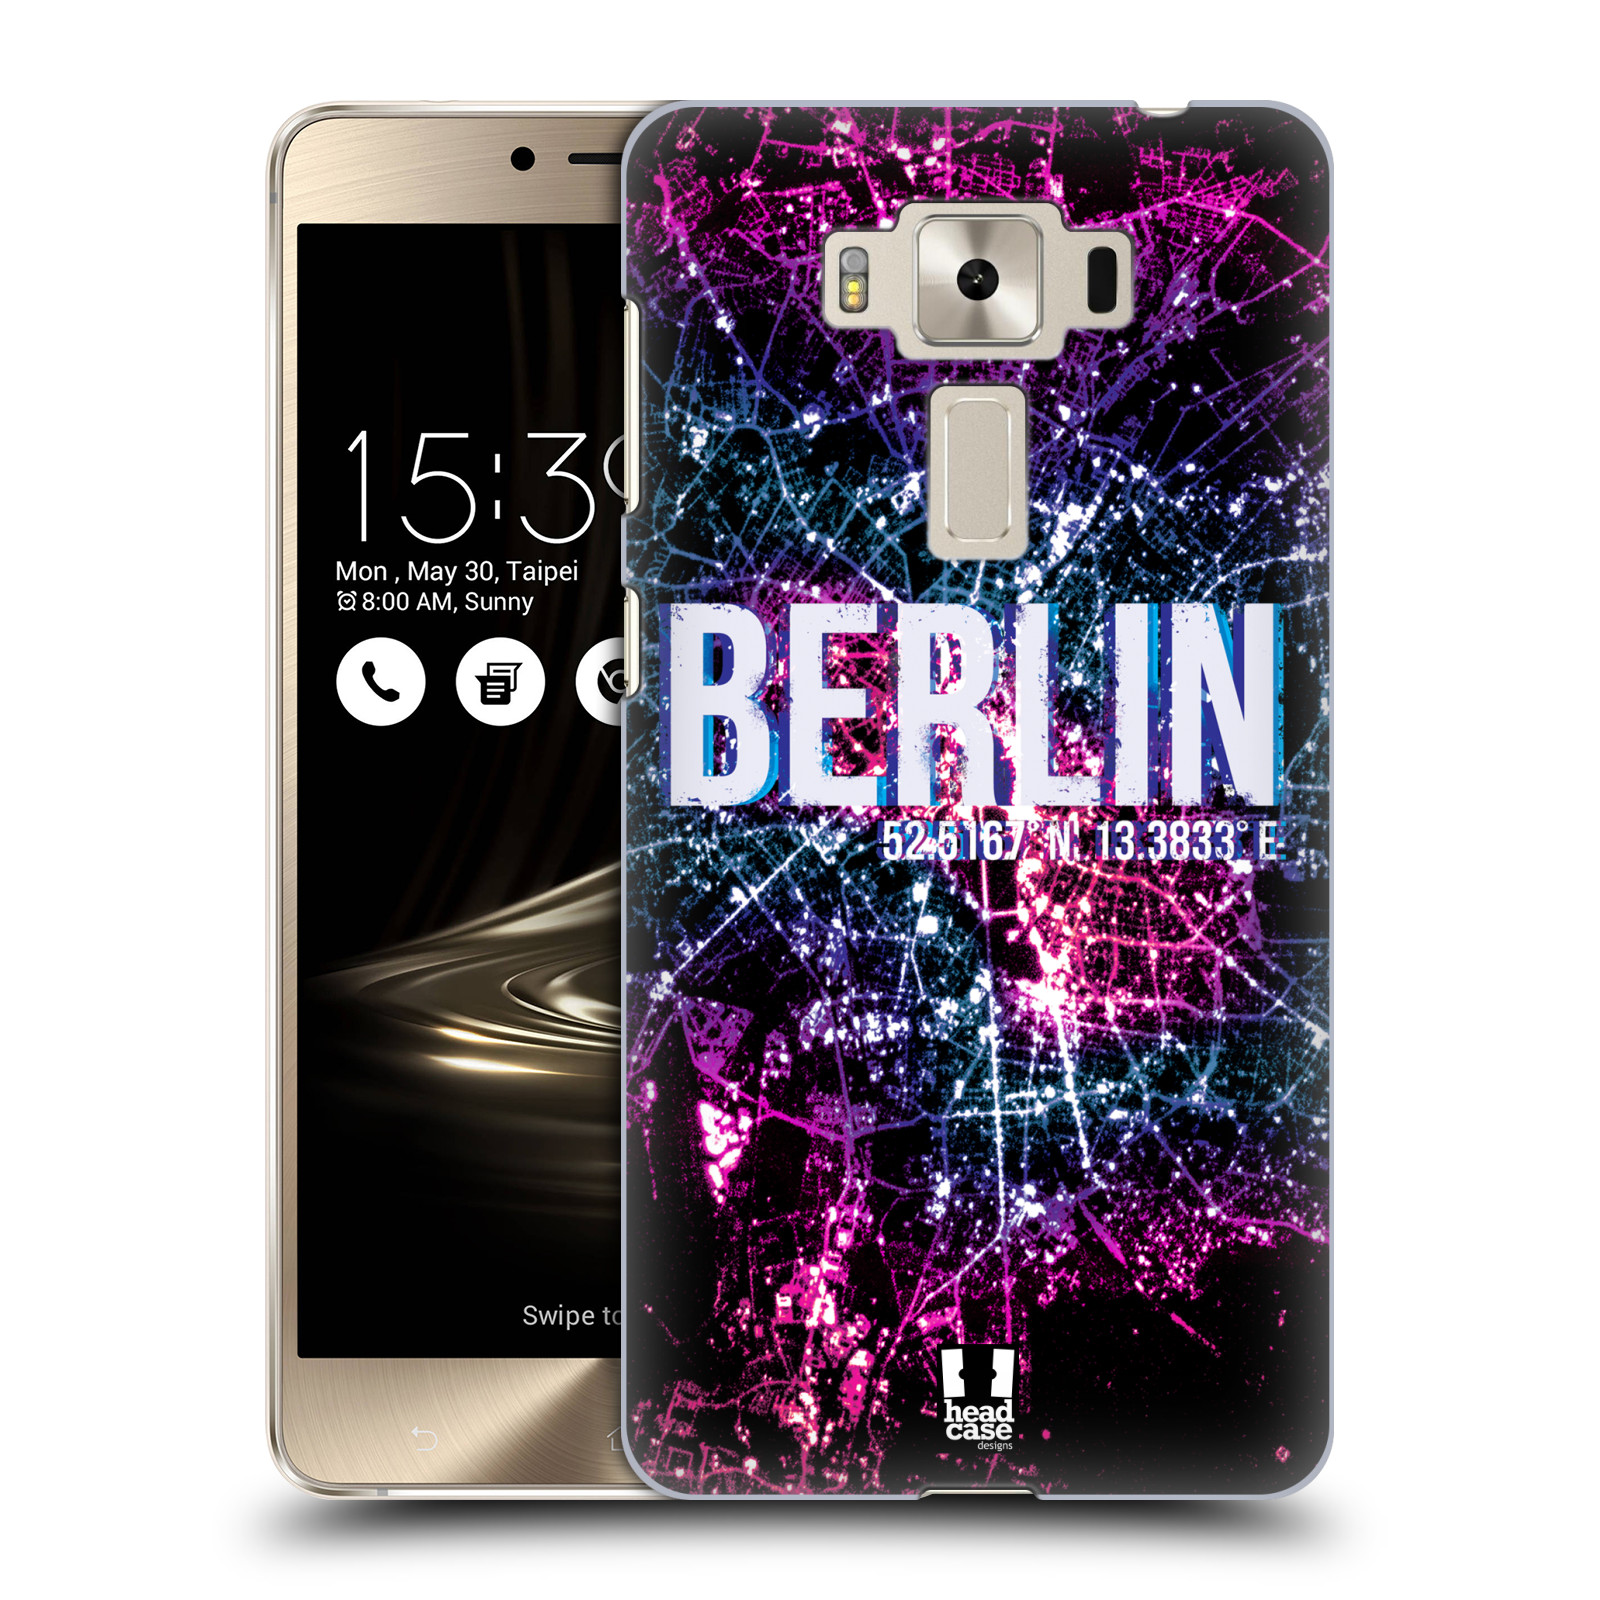 HEAD CASE plastový obal na mobil Asus Zenfone 3 DELUXE ZS550KL vzor Světla známých měst, Satelitní snímky NĚMECKO, BERLÍN